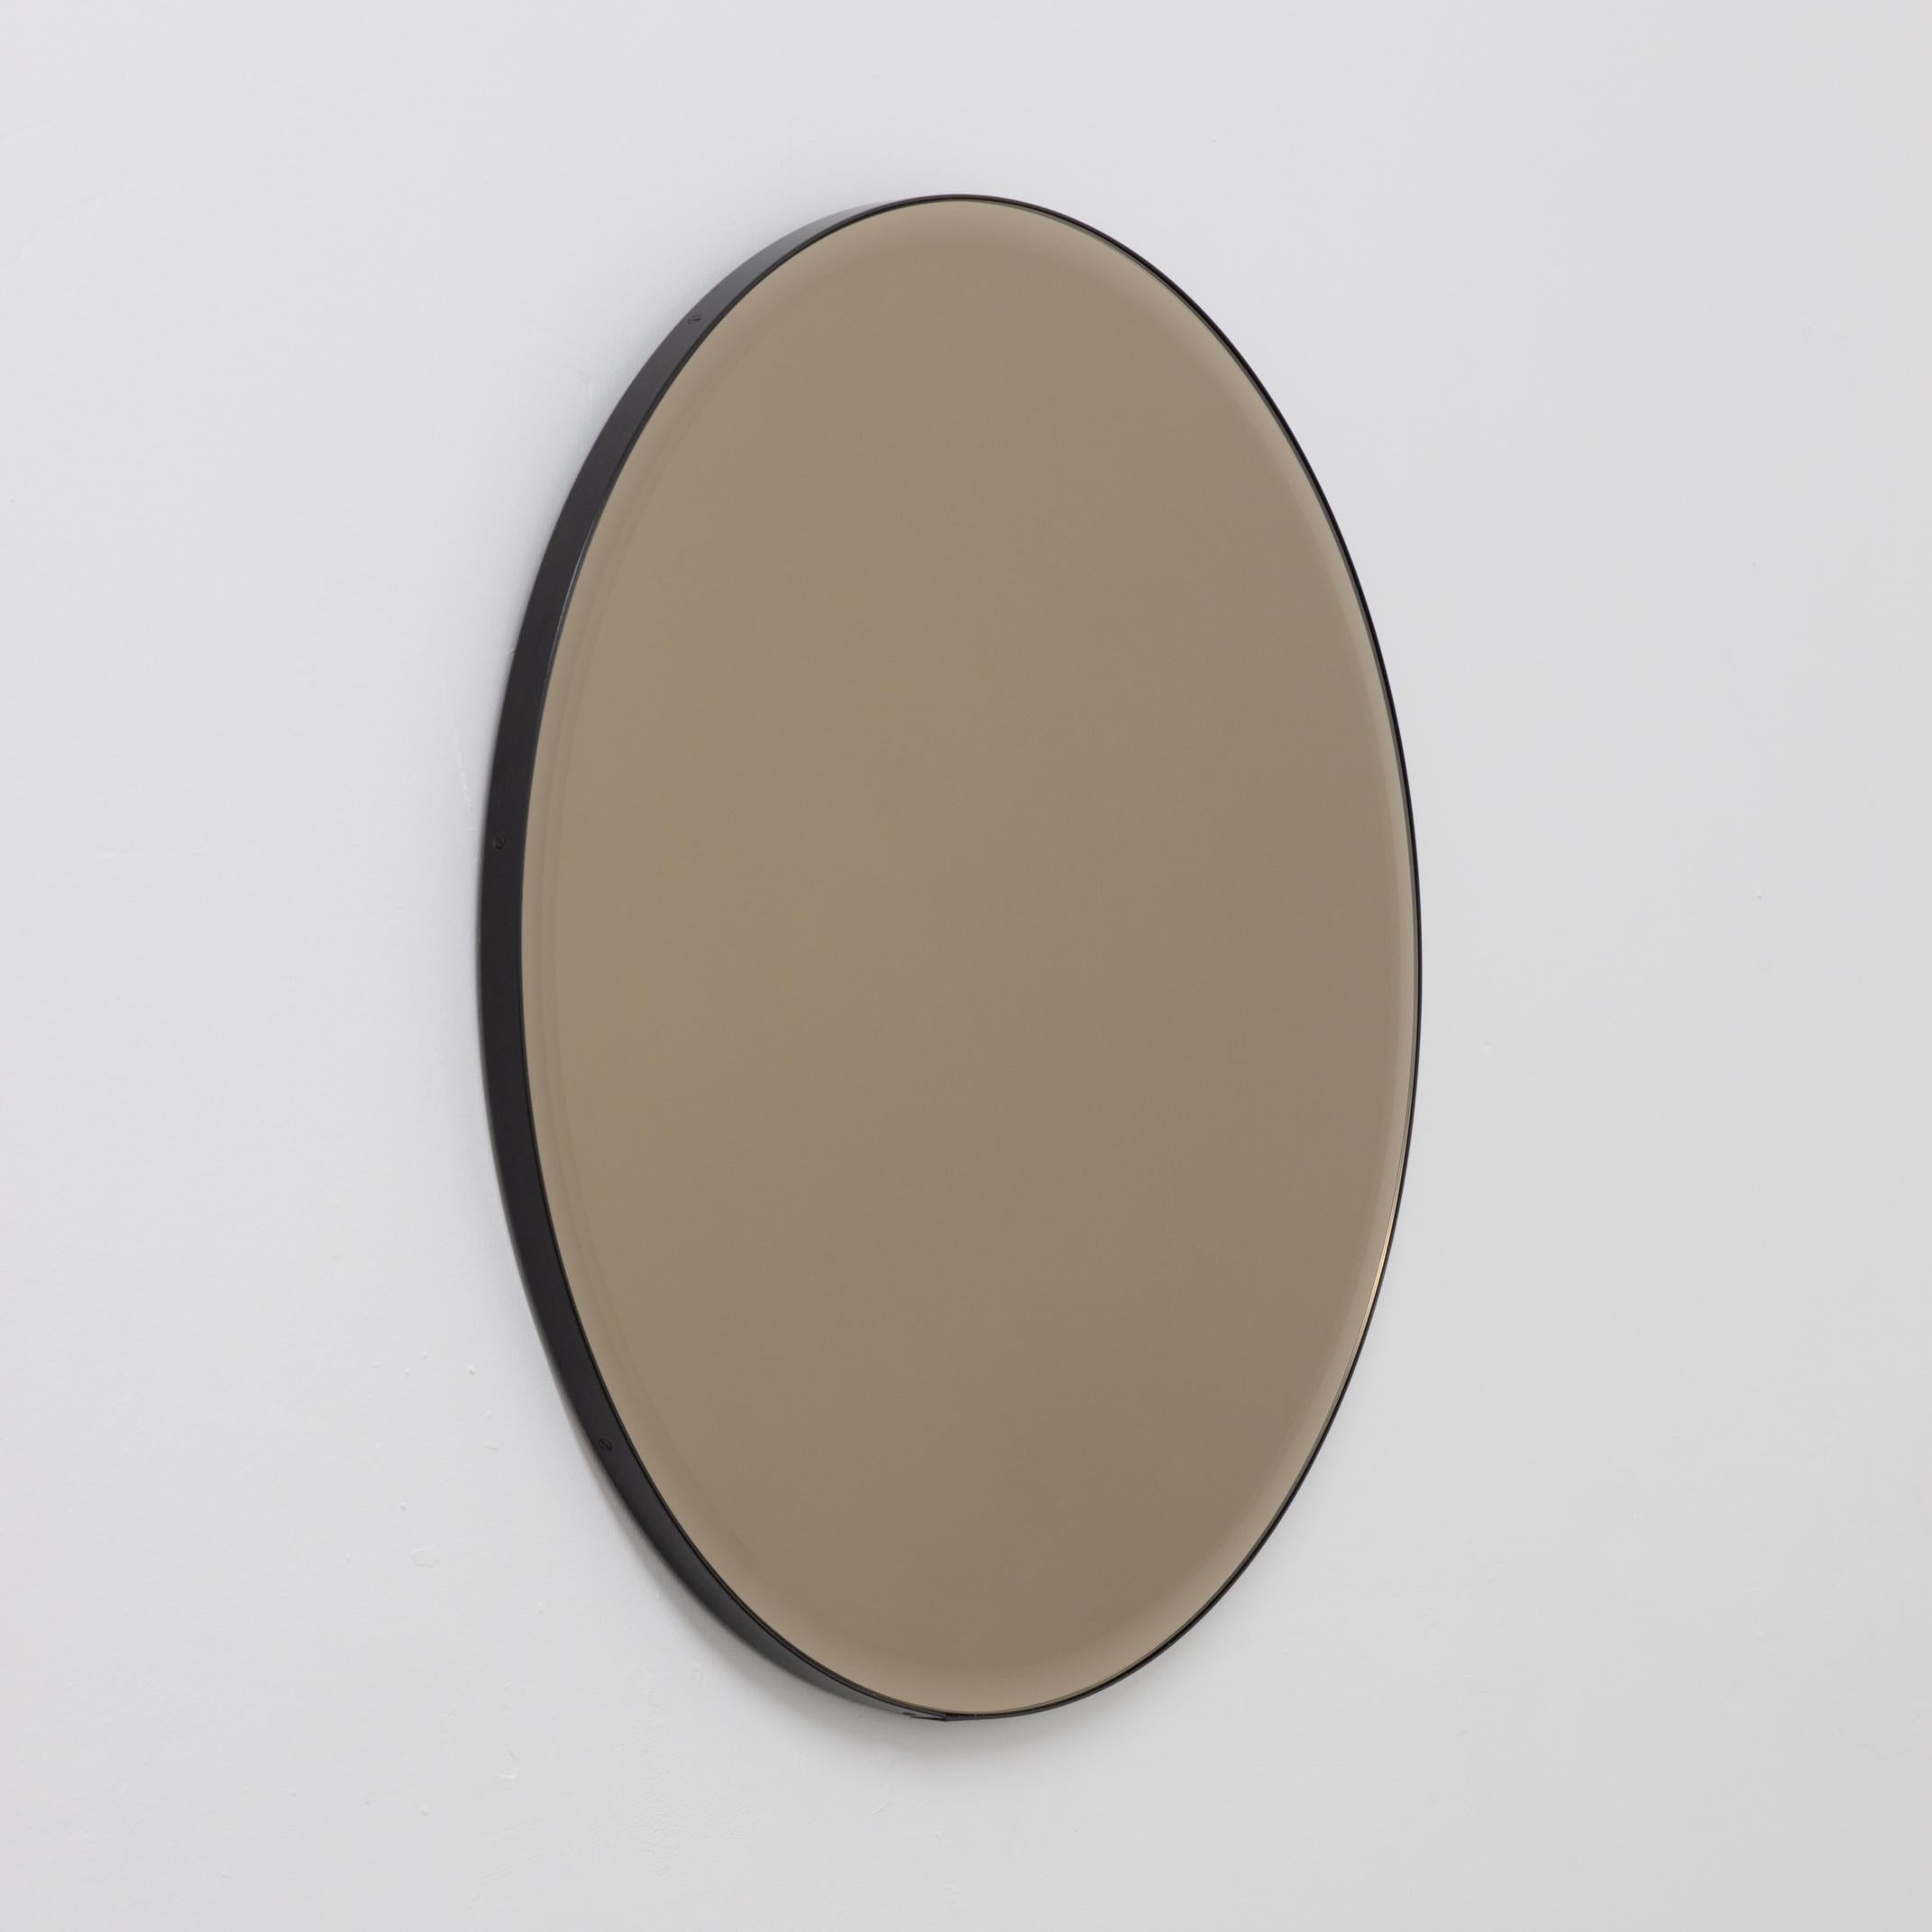 Dekorativer, abgeschrägter, bronzefarben getönter runder Spiegel mit einem eleganten, schwarz pulverbeschichteten Aluminiumrahmen. Entworfen und handgefertigt in London, UK.

Die mittelgroßen, großen und extragroßen Spiegel (60, 80 und 100 cm) sind